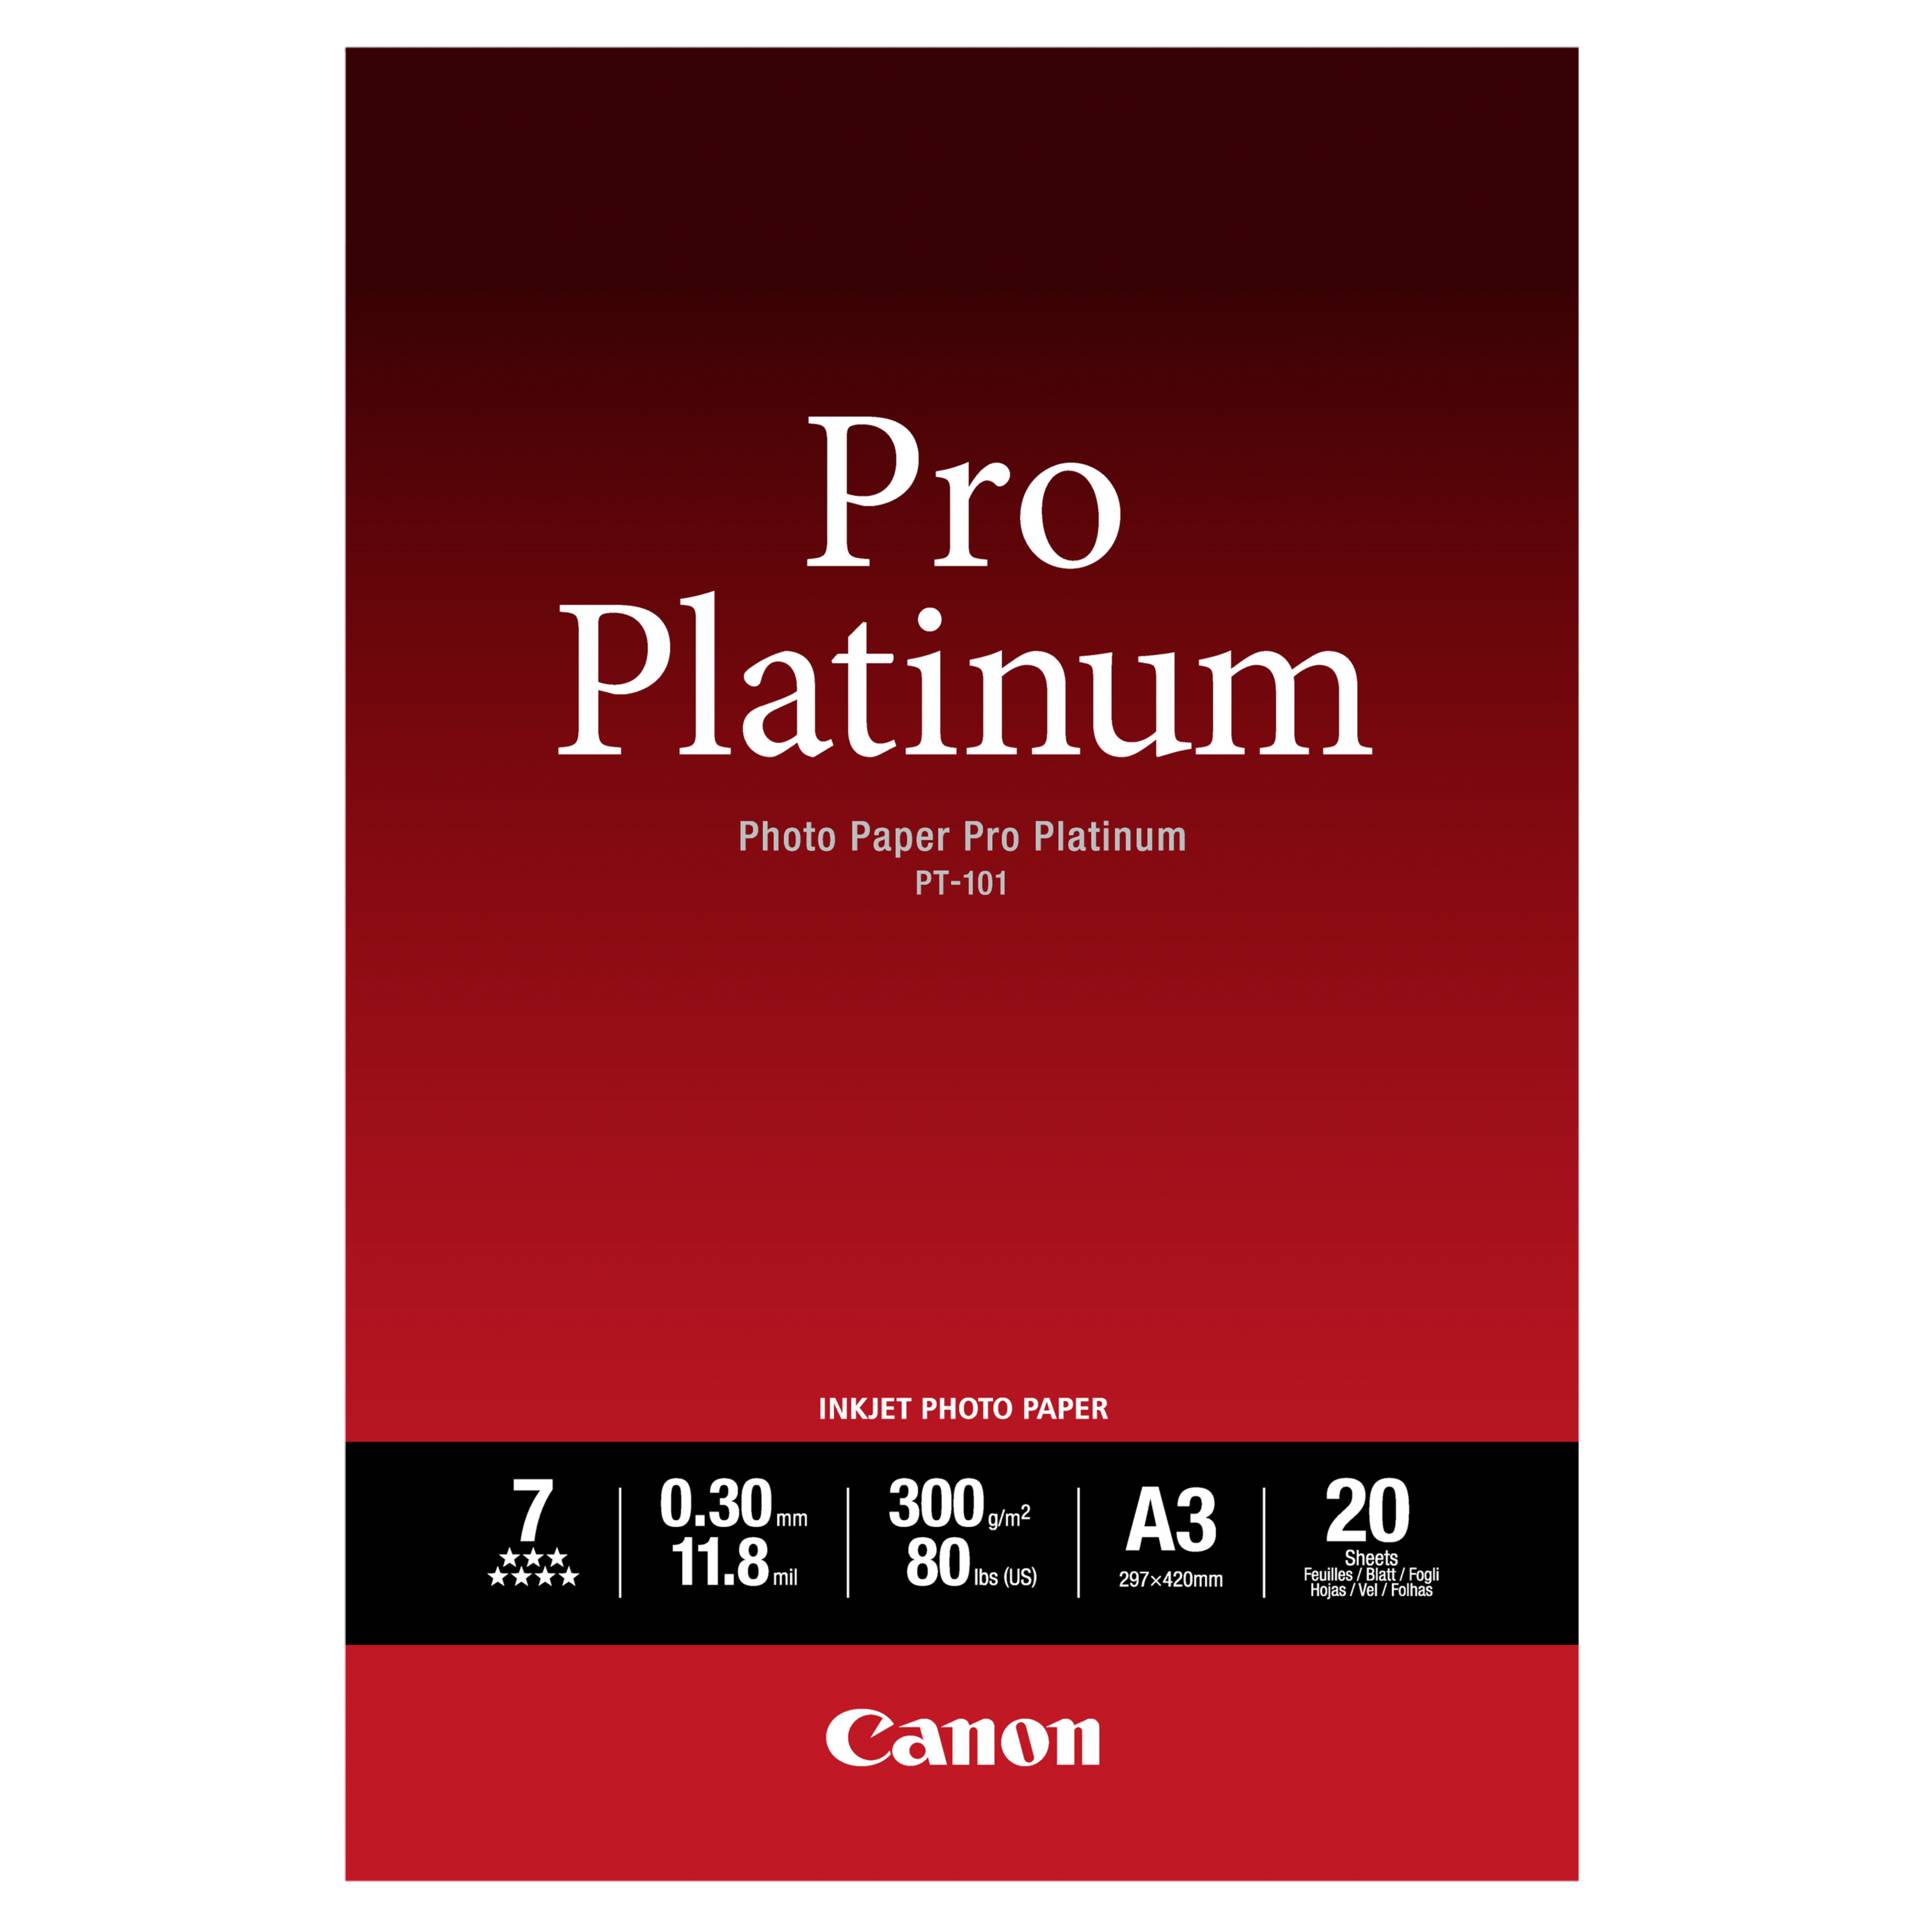 Canon PT-101 A 3, 20 fogli carta foto  Pro Platinum   300 g